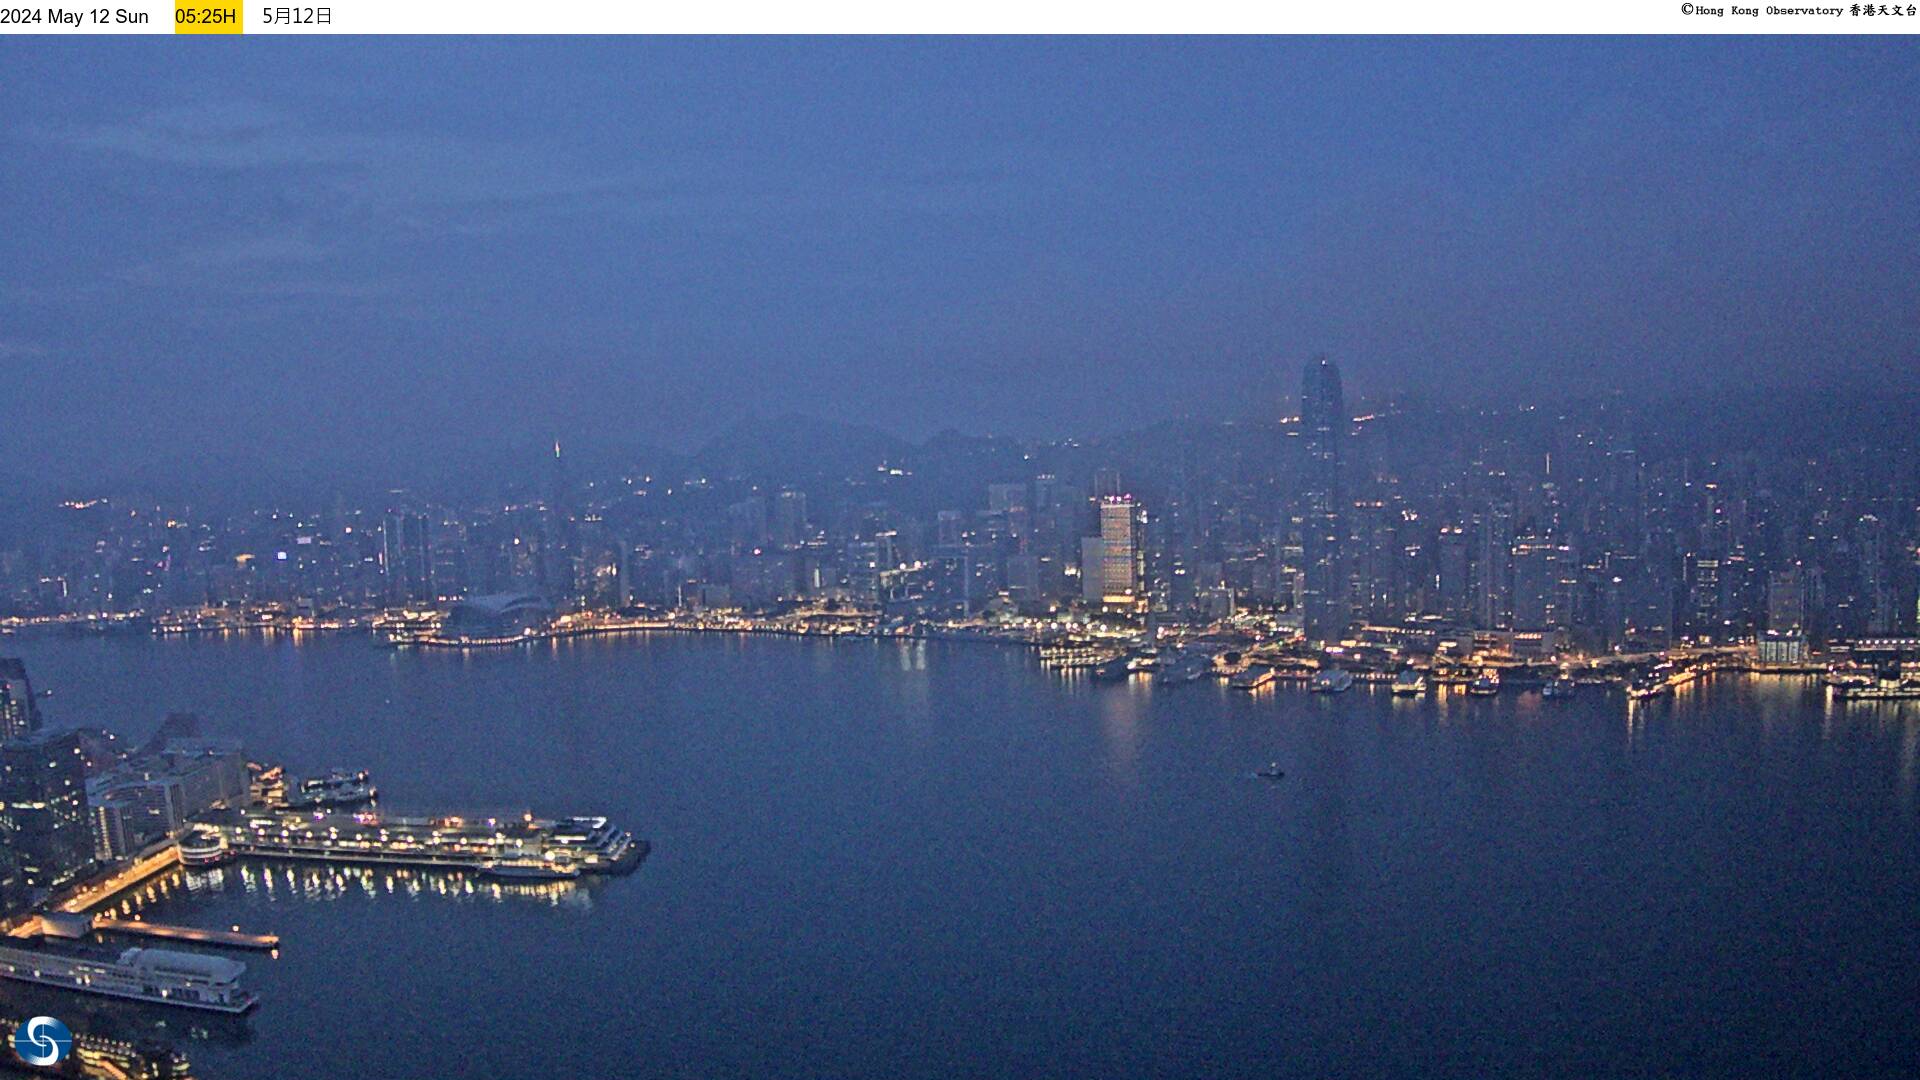 Hong Kong Mer. 05:33